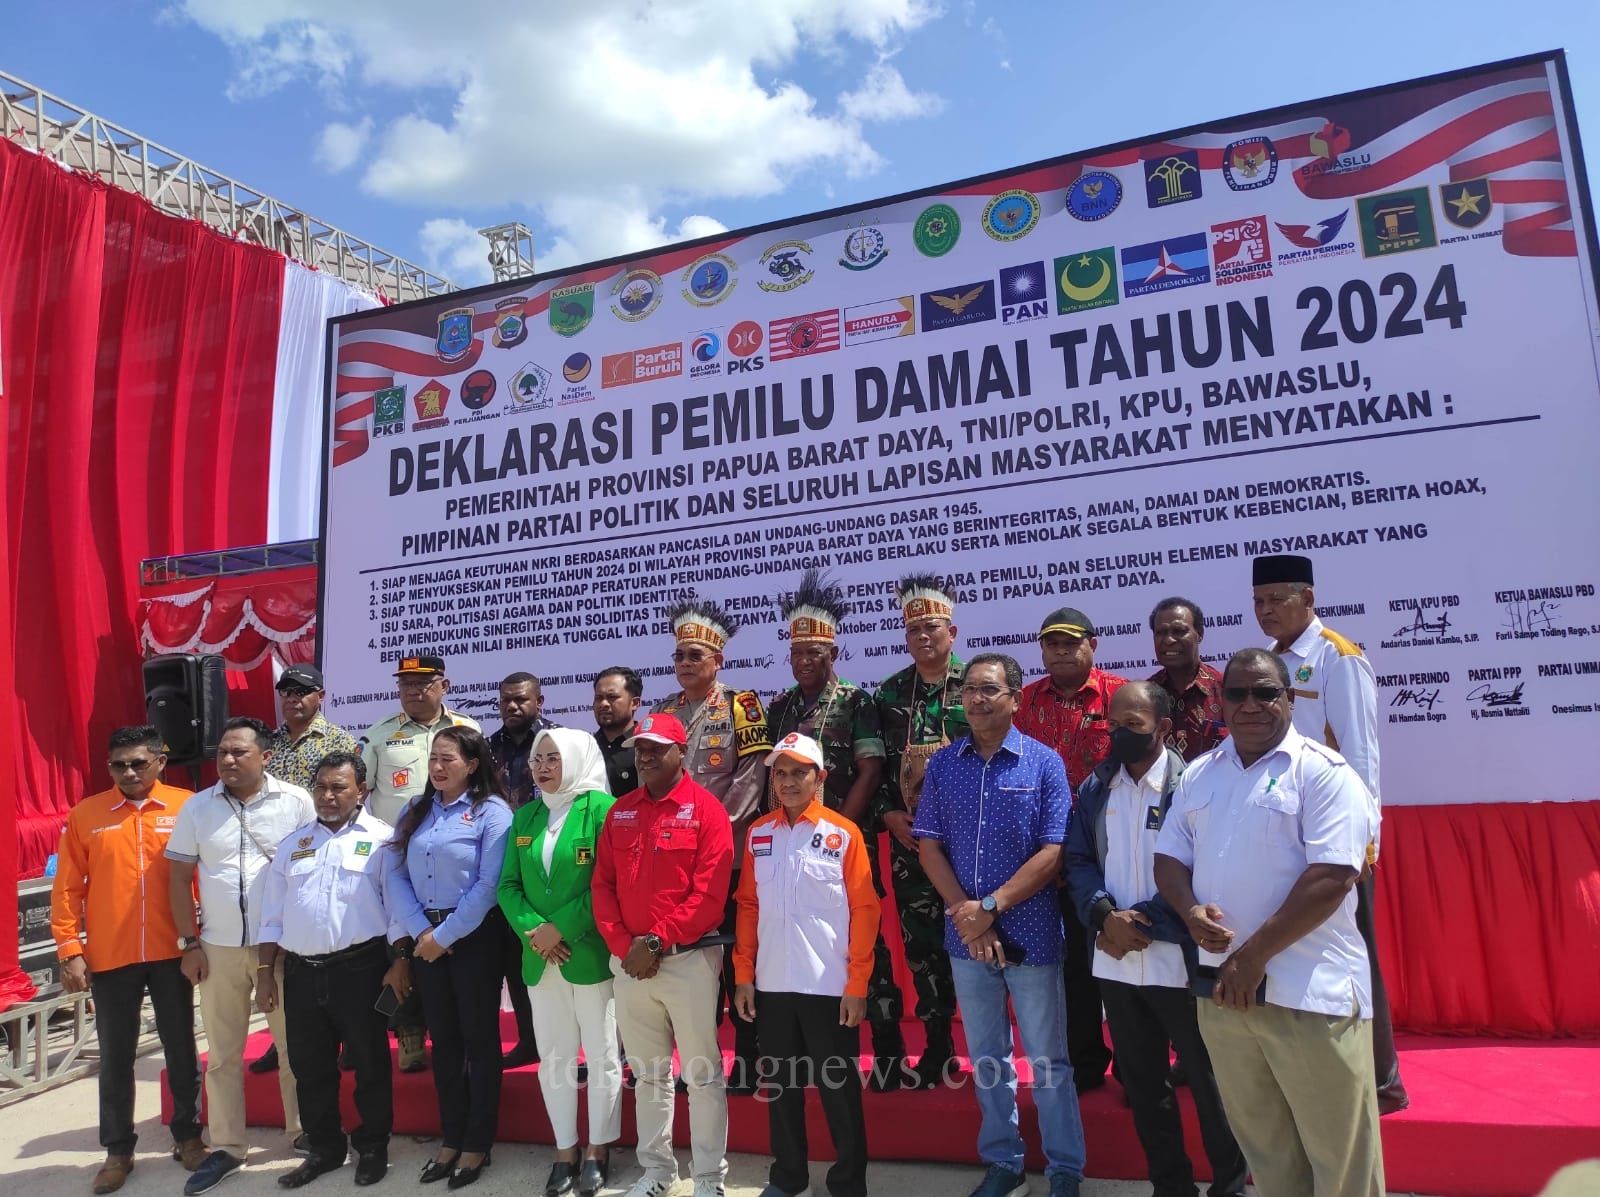 TNI-Polri, KPU, Bawaslu, Hingga Parpol Deklarasi Pemilu Damai di Sorong